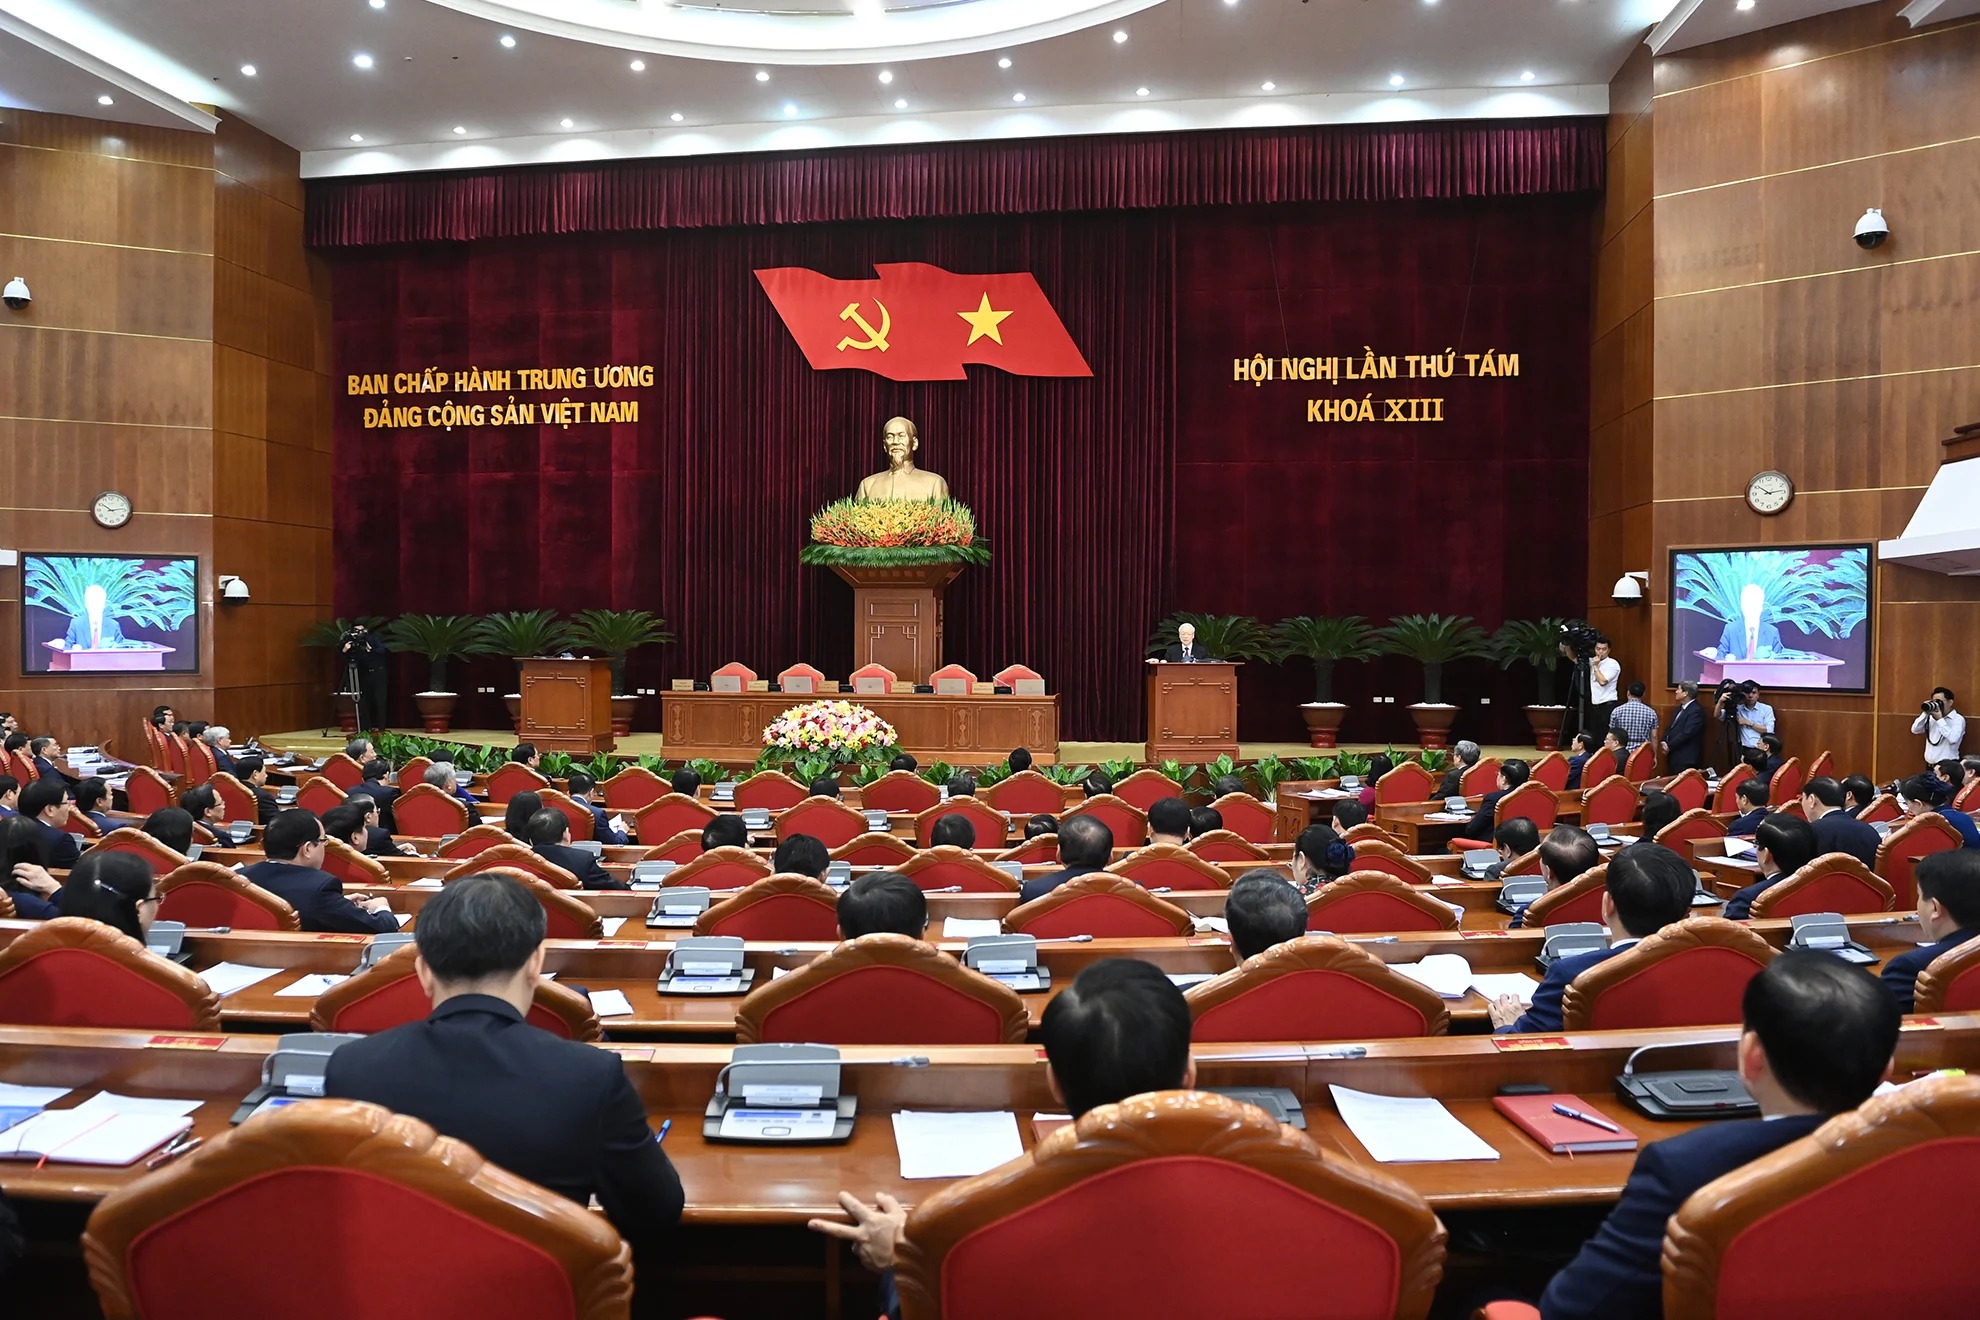 Tự hào, tin tưởng dưới lá cờ vẻ vang của Đảng, quyết tâm xây dựng một nước Việt Nam ngày càng giàu mạnh, văn minh, văn hiến và anh hùng- Ảnh 7.